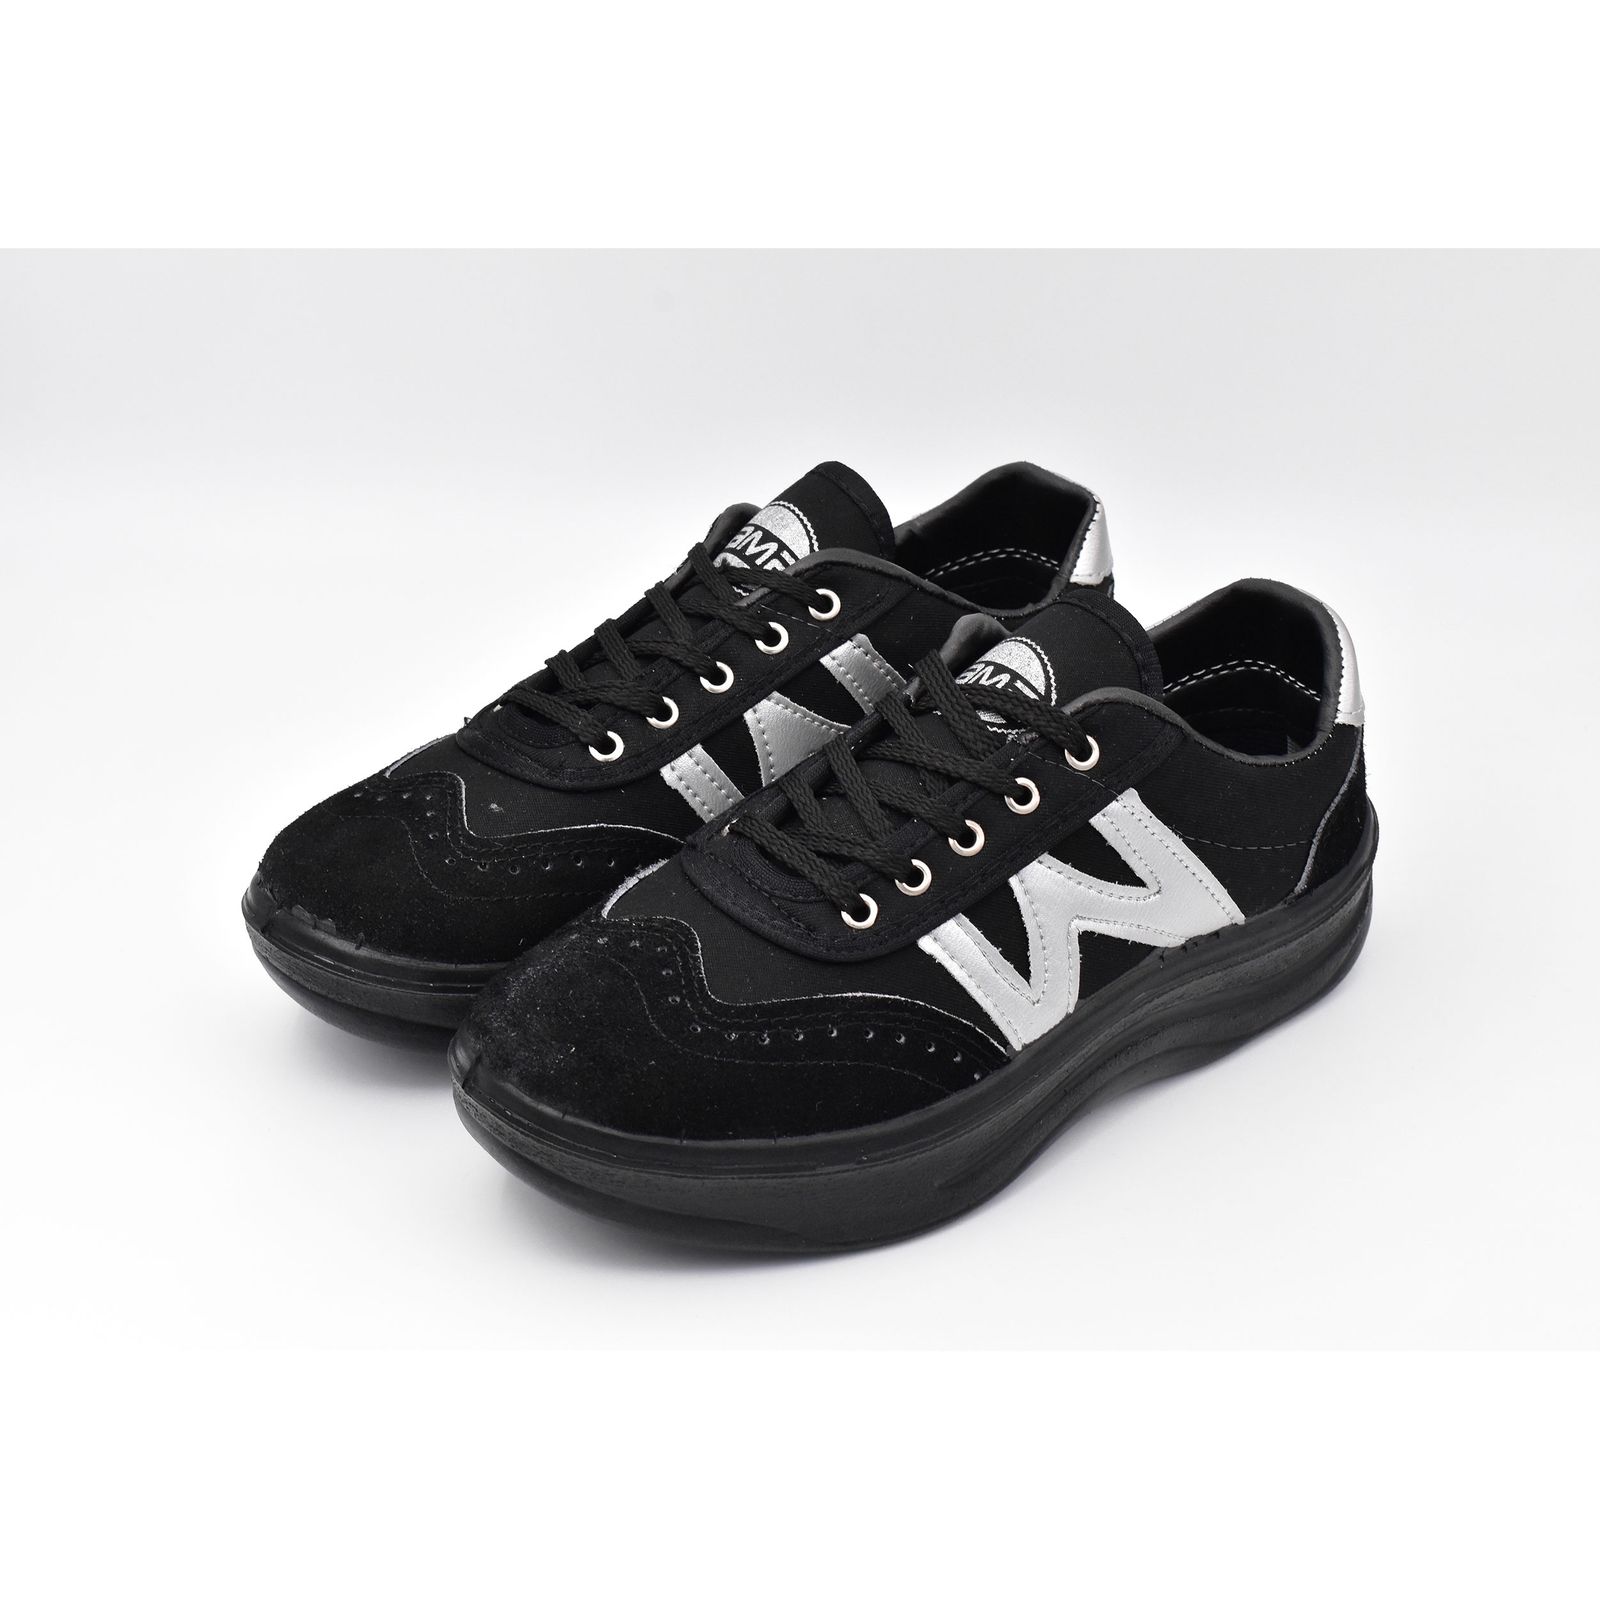 کفش پیاده روی مردانه پاما مدل W کد G1260 -  - 3